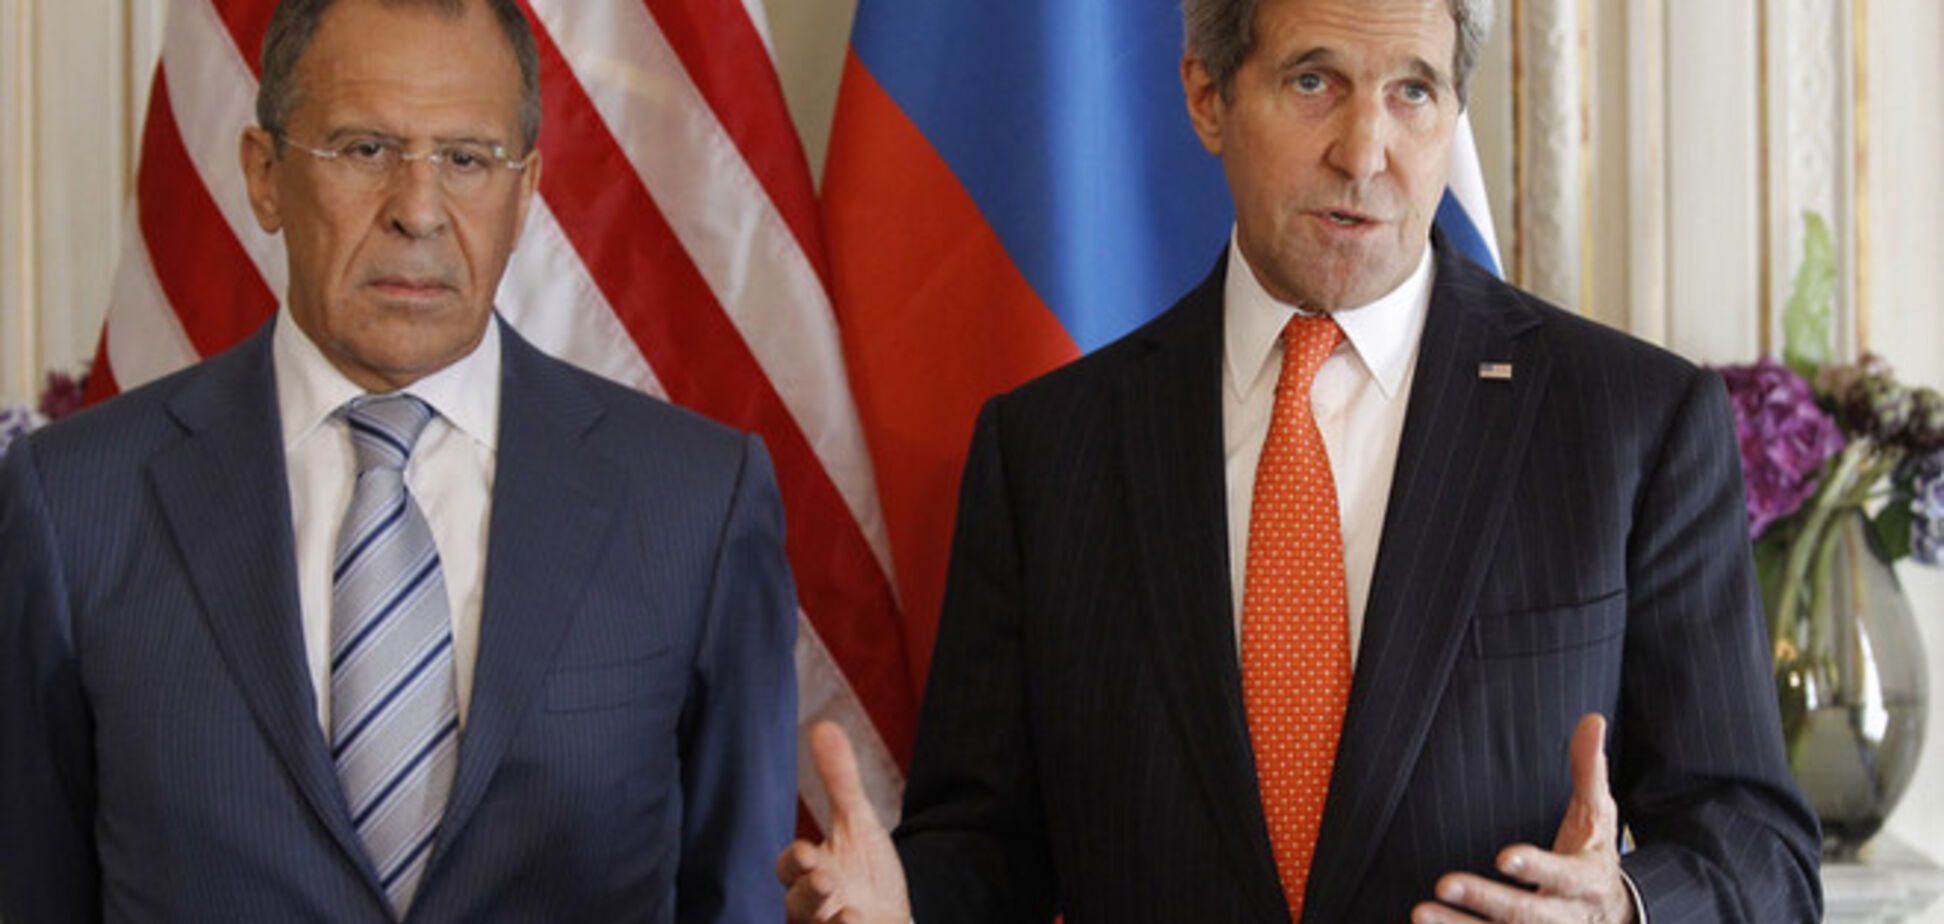 Расхождения между США и Россией по украинскому вопросу сохраняются - Керри